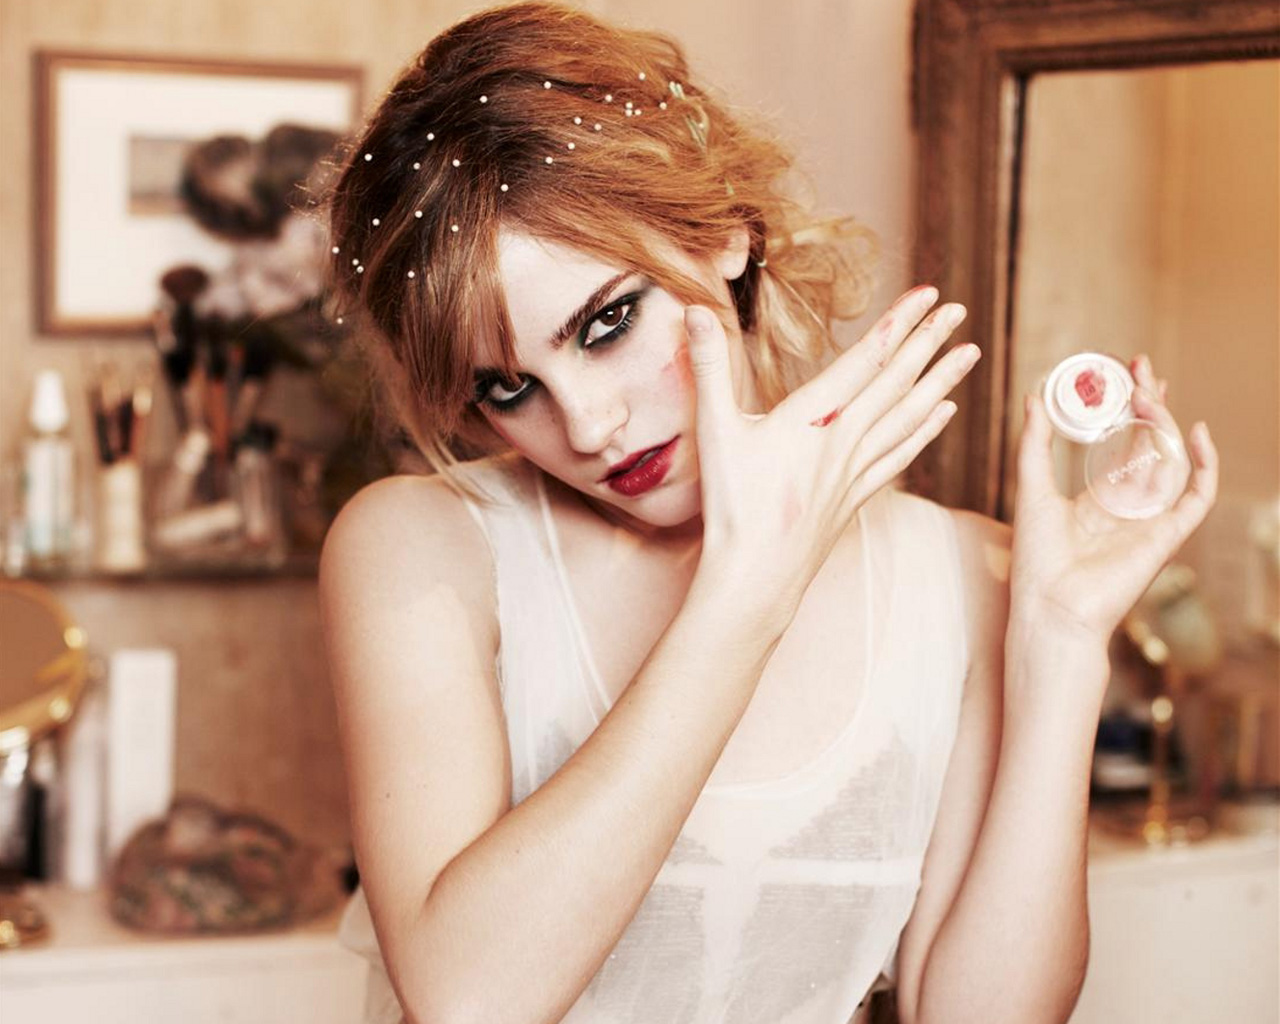 Beauty: Emma Watson - 1280 x 1024 jpeg 281kB